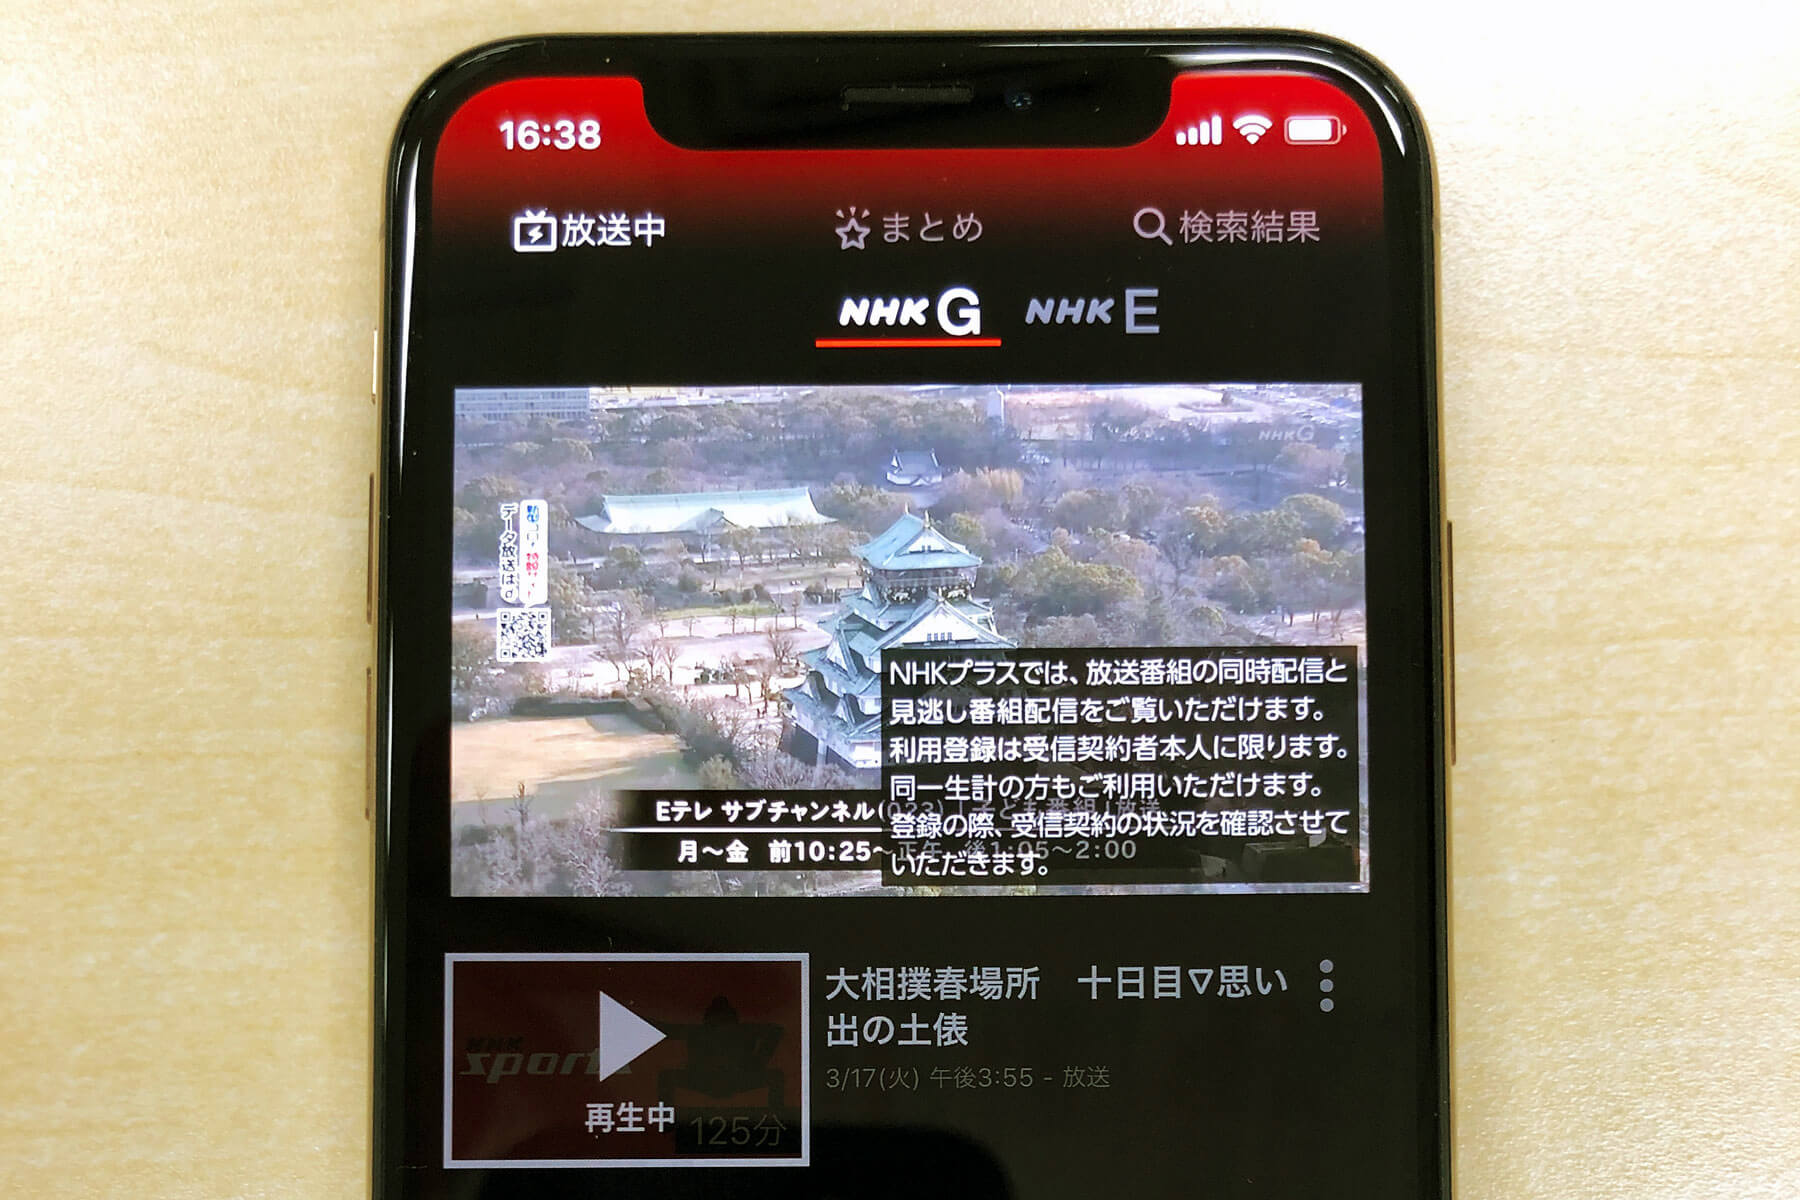 NHKをスマホで視聴！「NHKプラス」の利用登録とログイン方法